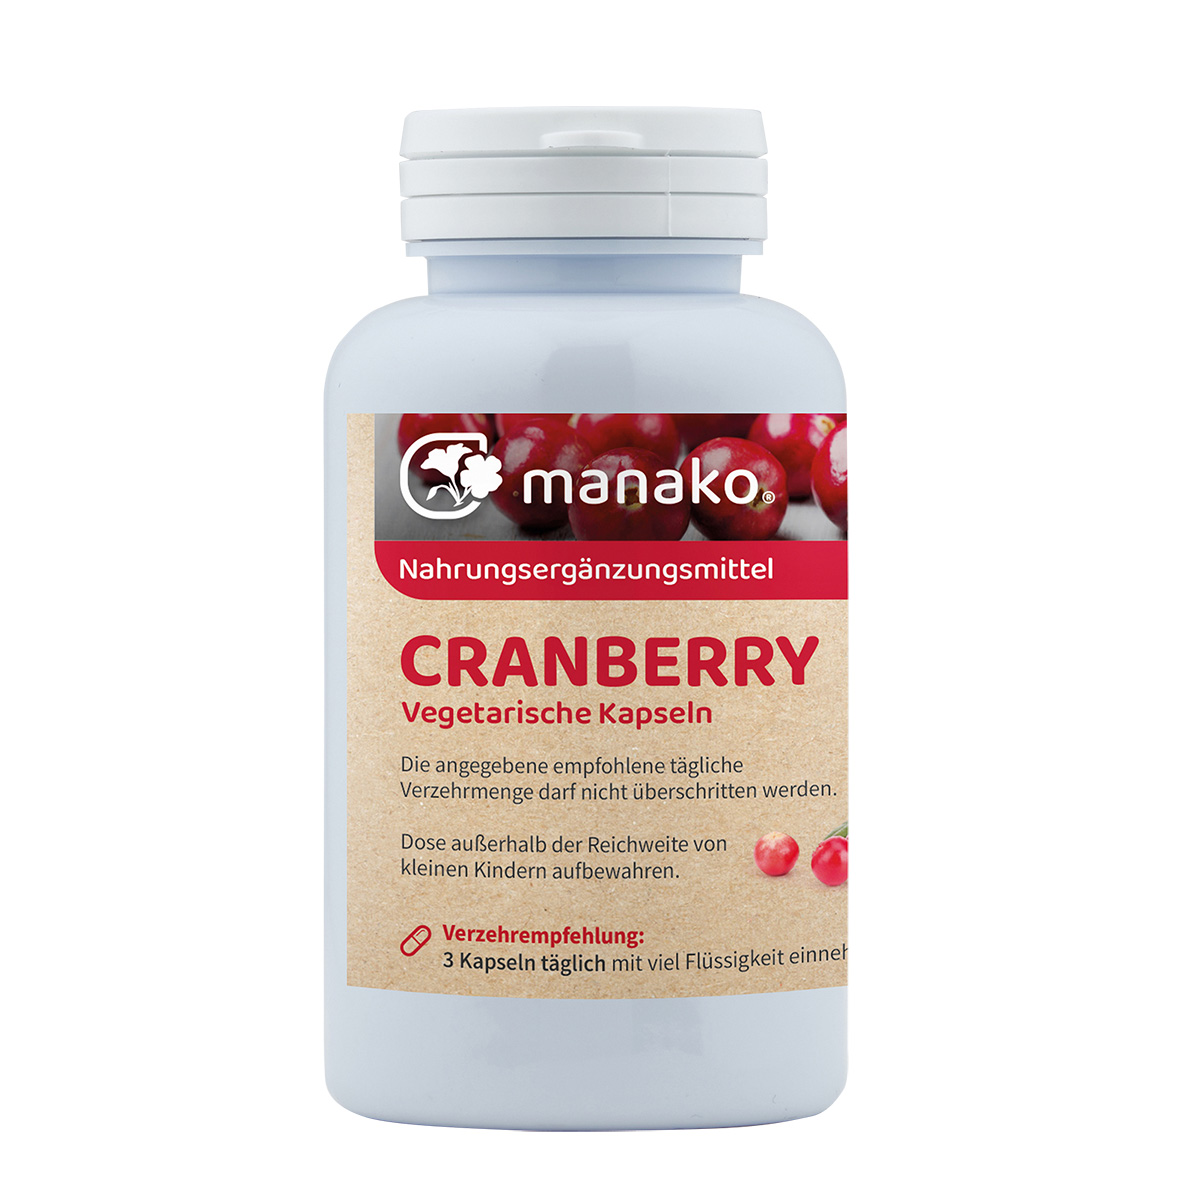 manako Cranberry vegetarische Kapseln, 25:1 Extrakt, 120 Stück, Dose 69 g